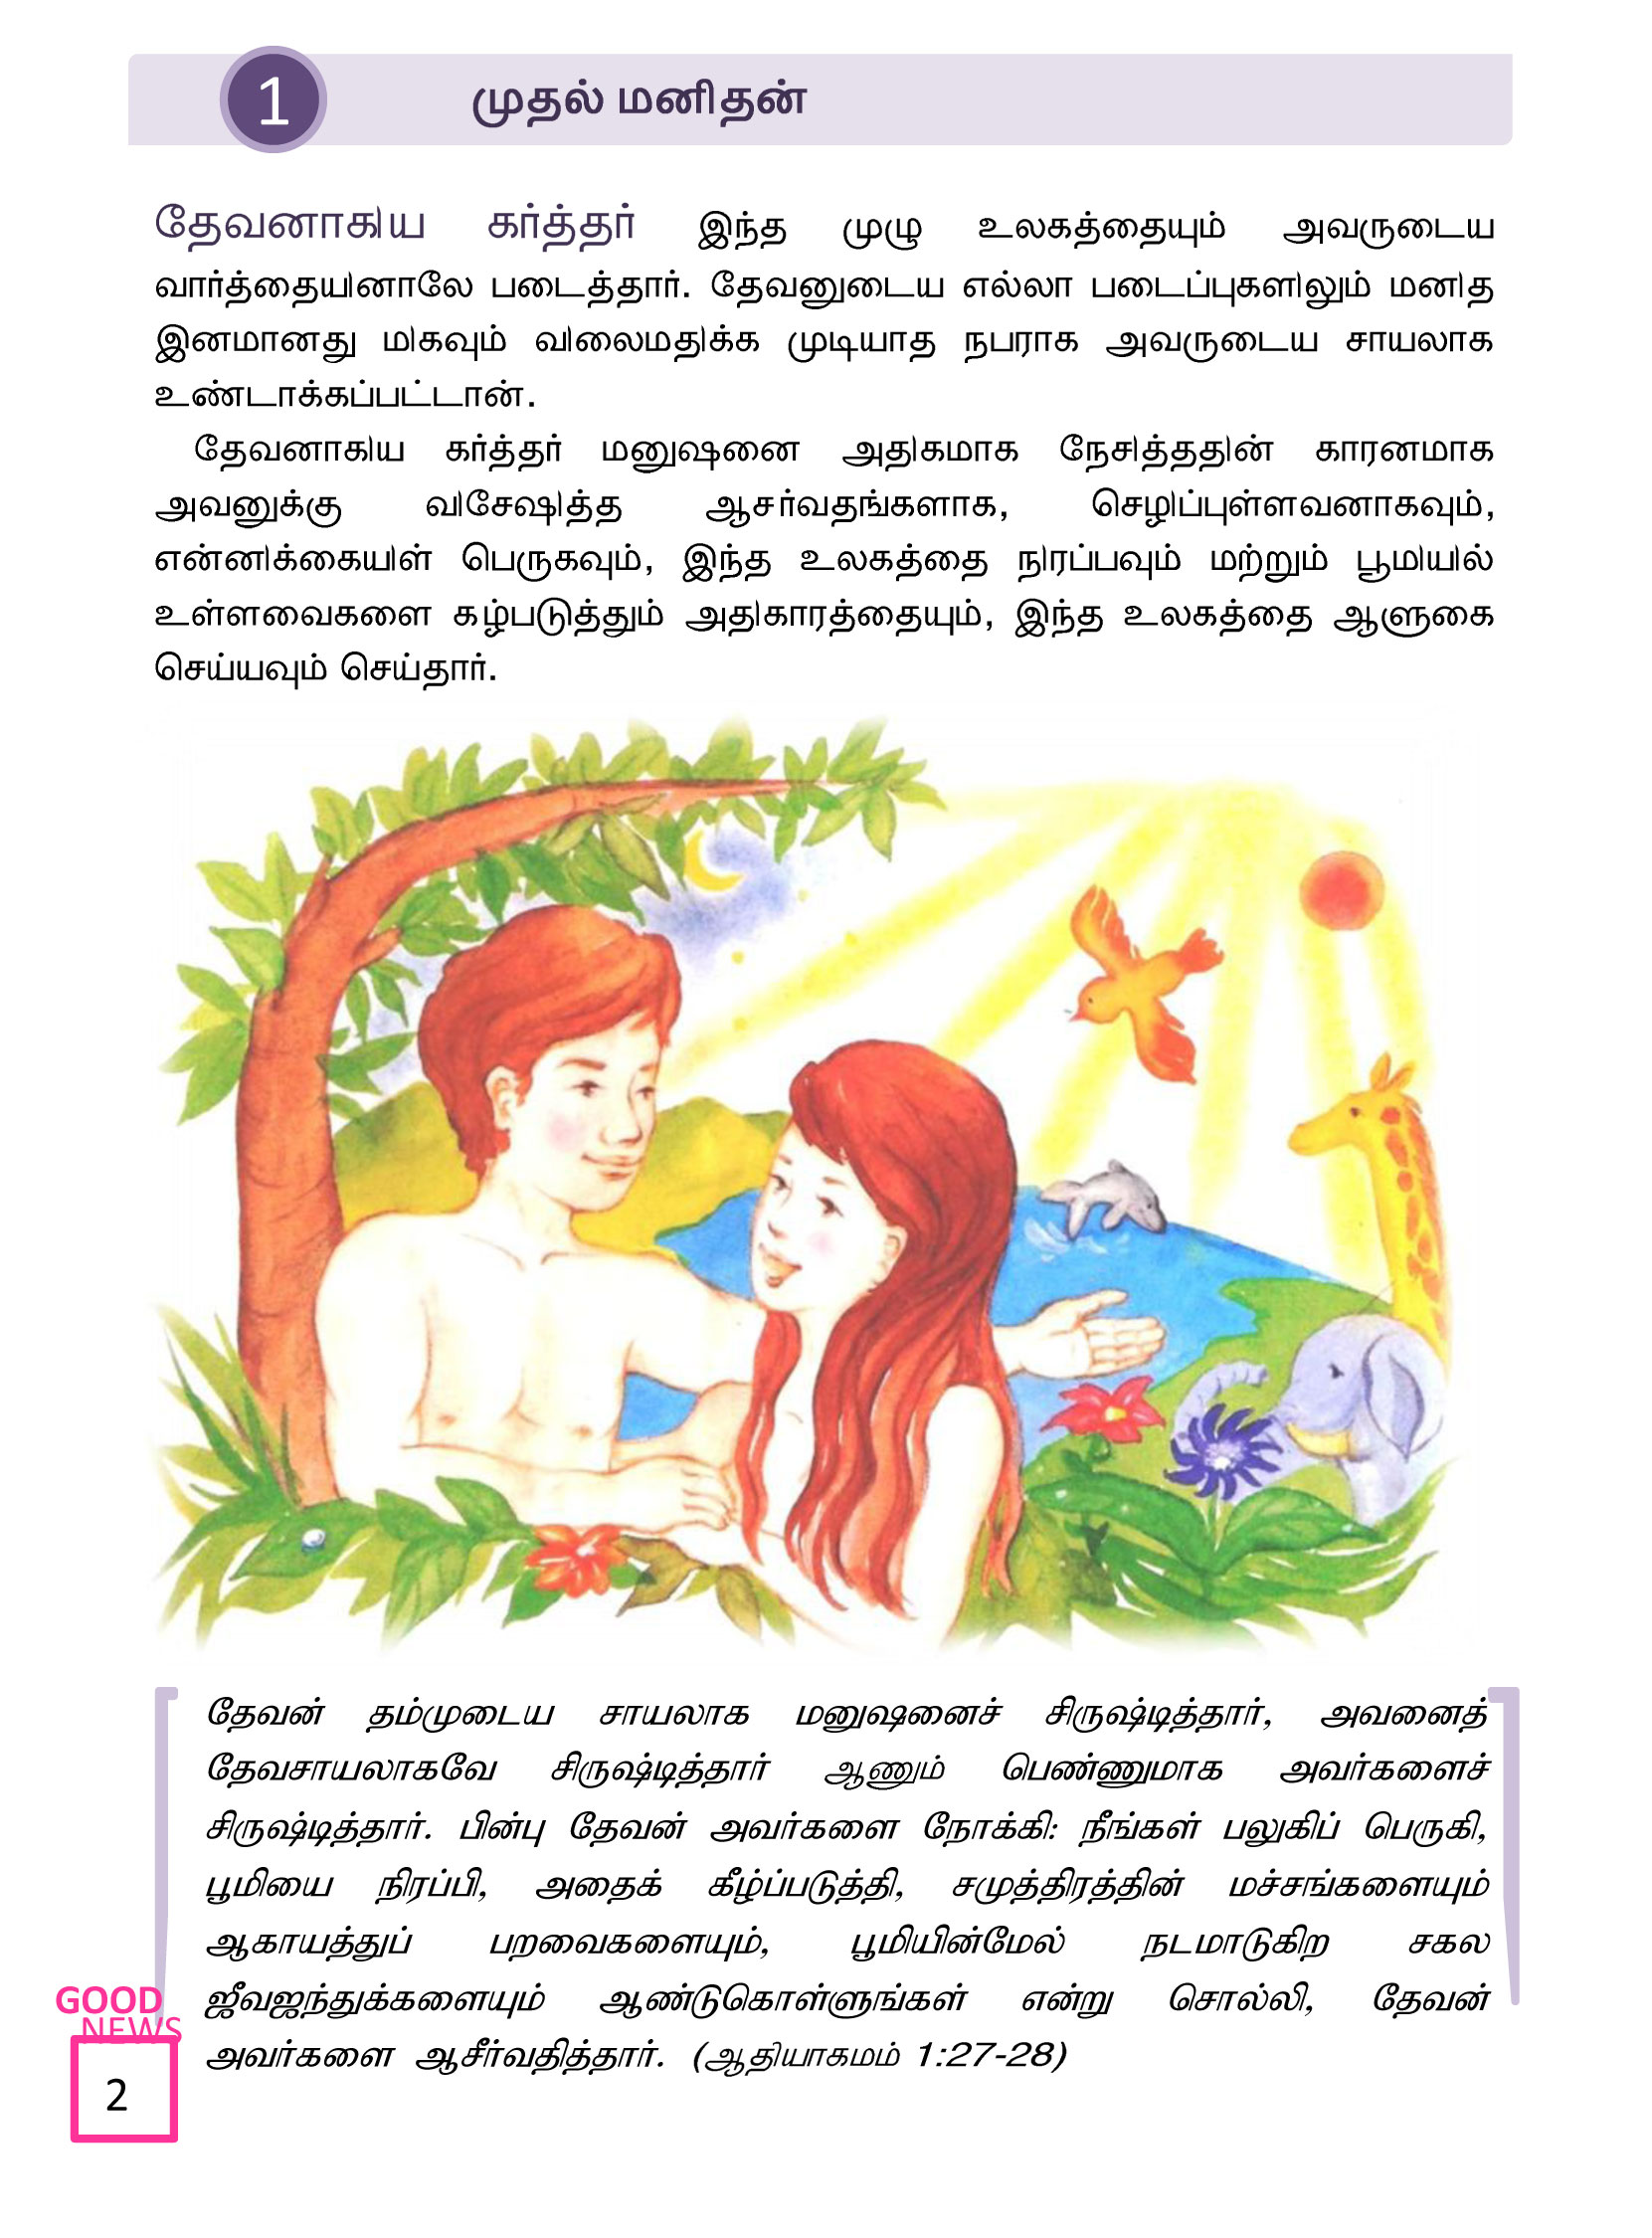 Tamil-Evangelism-Book-Pdf-3-02.jpg